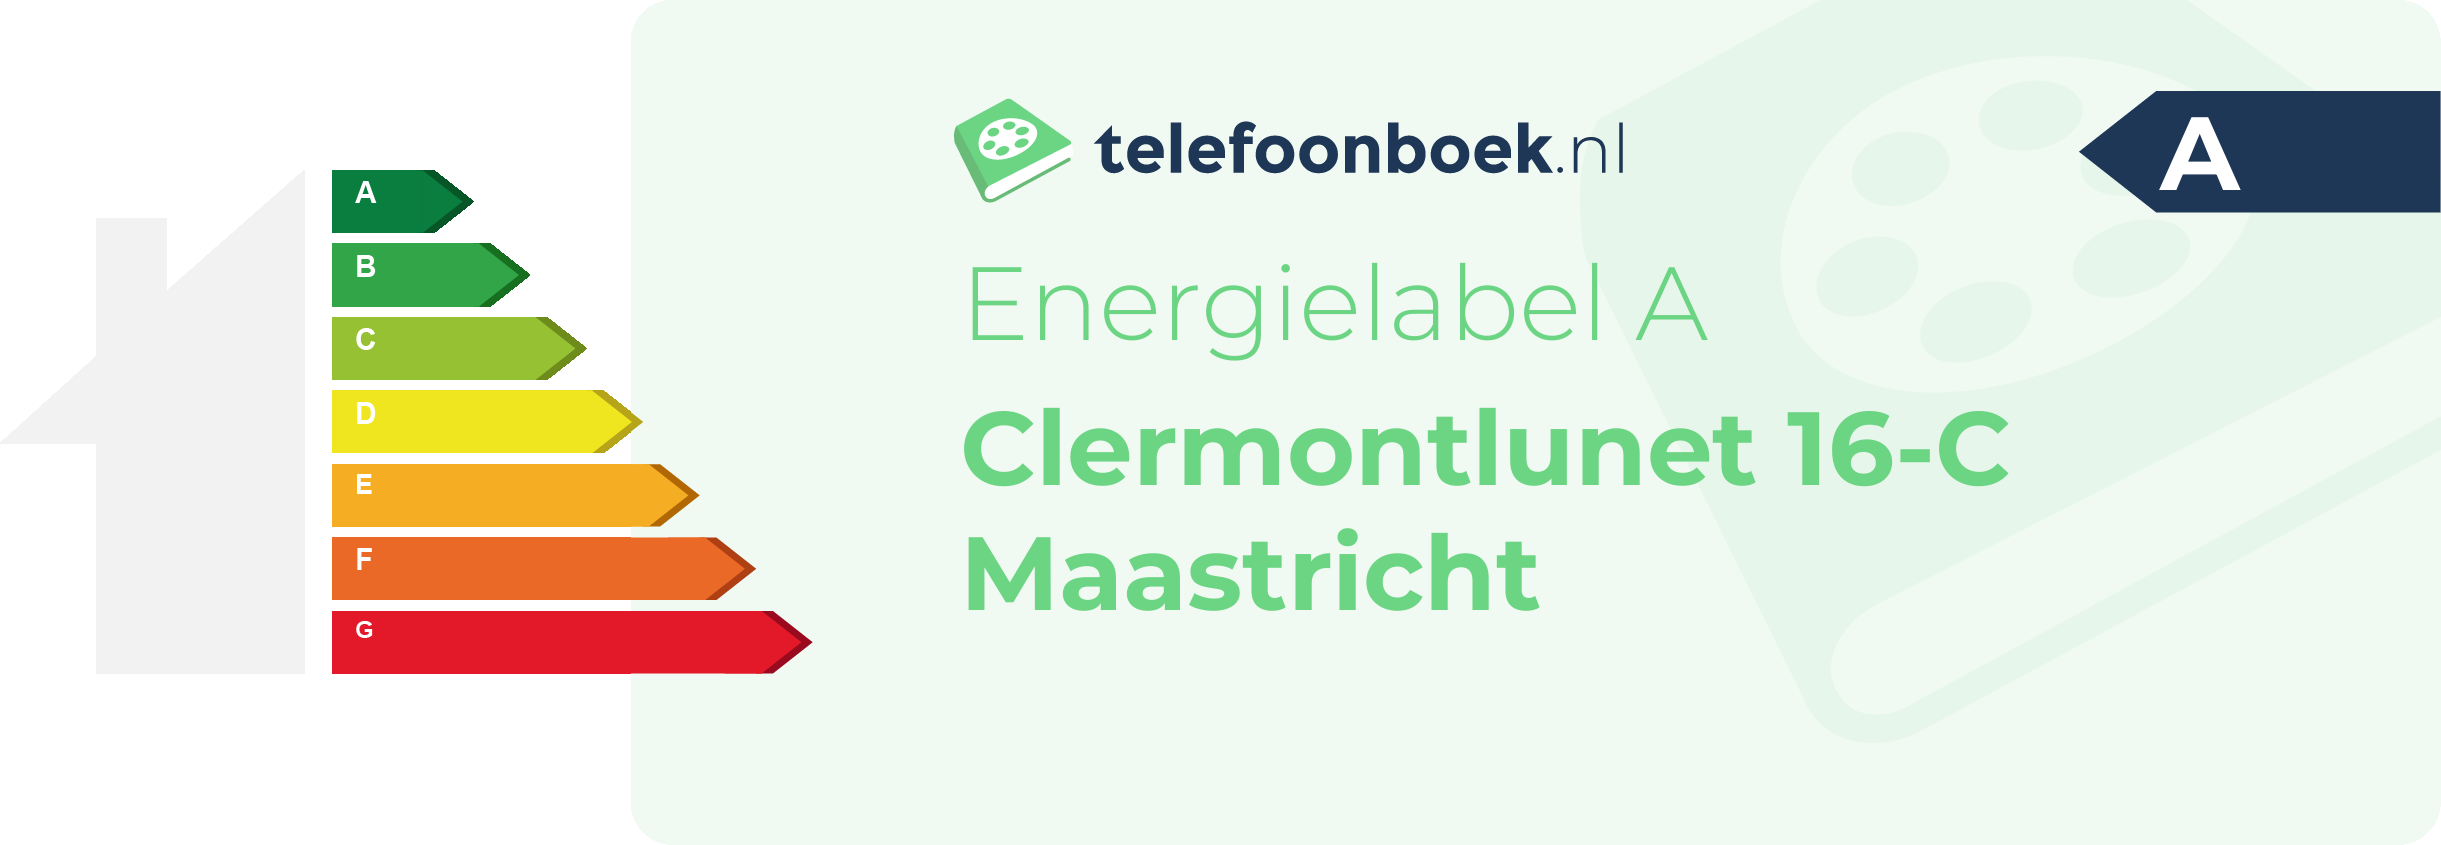 Energielabel Clermontlunet 16-C Maastricht